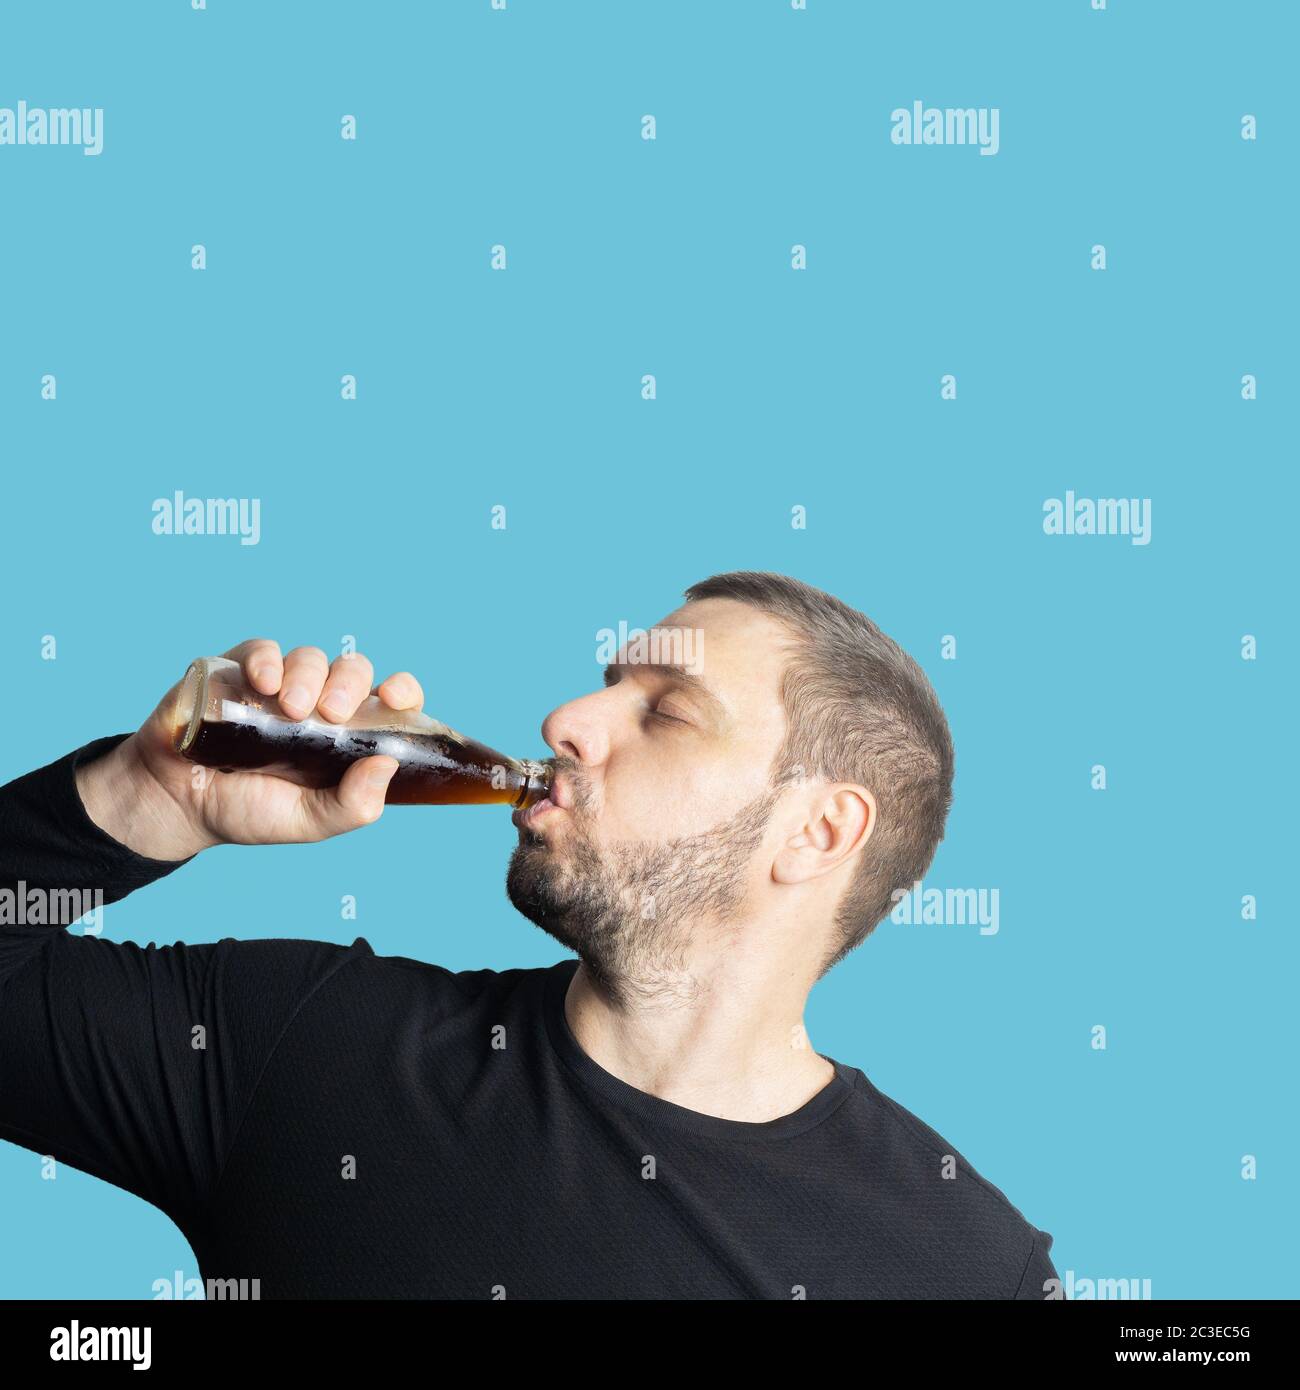 Un homme barbu à poil sombre en vêtements sombres boit une boisson sombre dans une bouteille avec les yeux fermés Banque D'Images